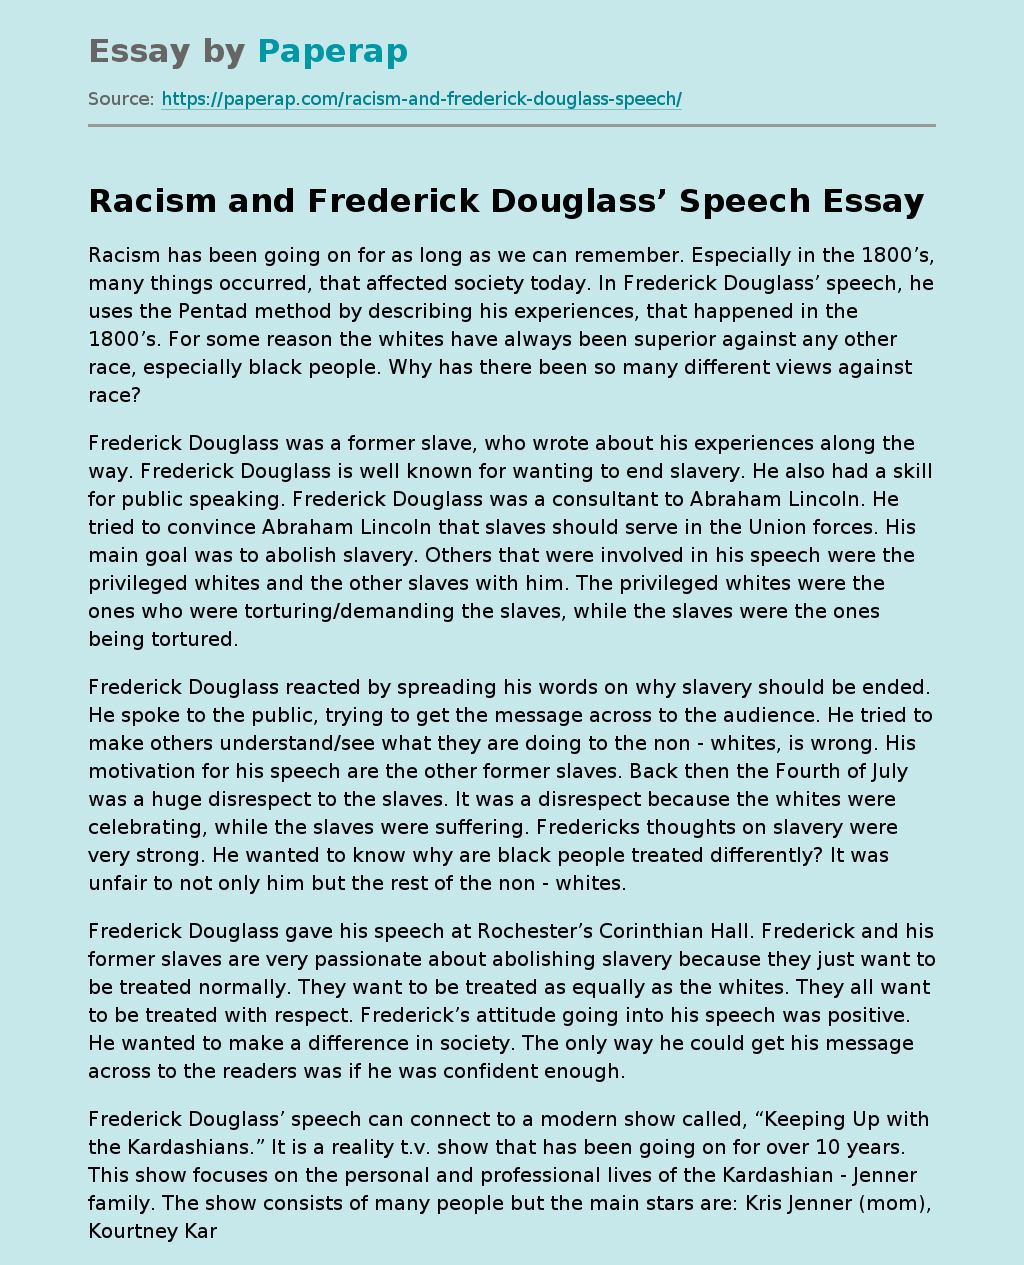 Racism and Frederick Douglass’ Speech